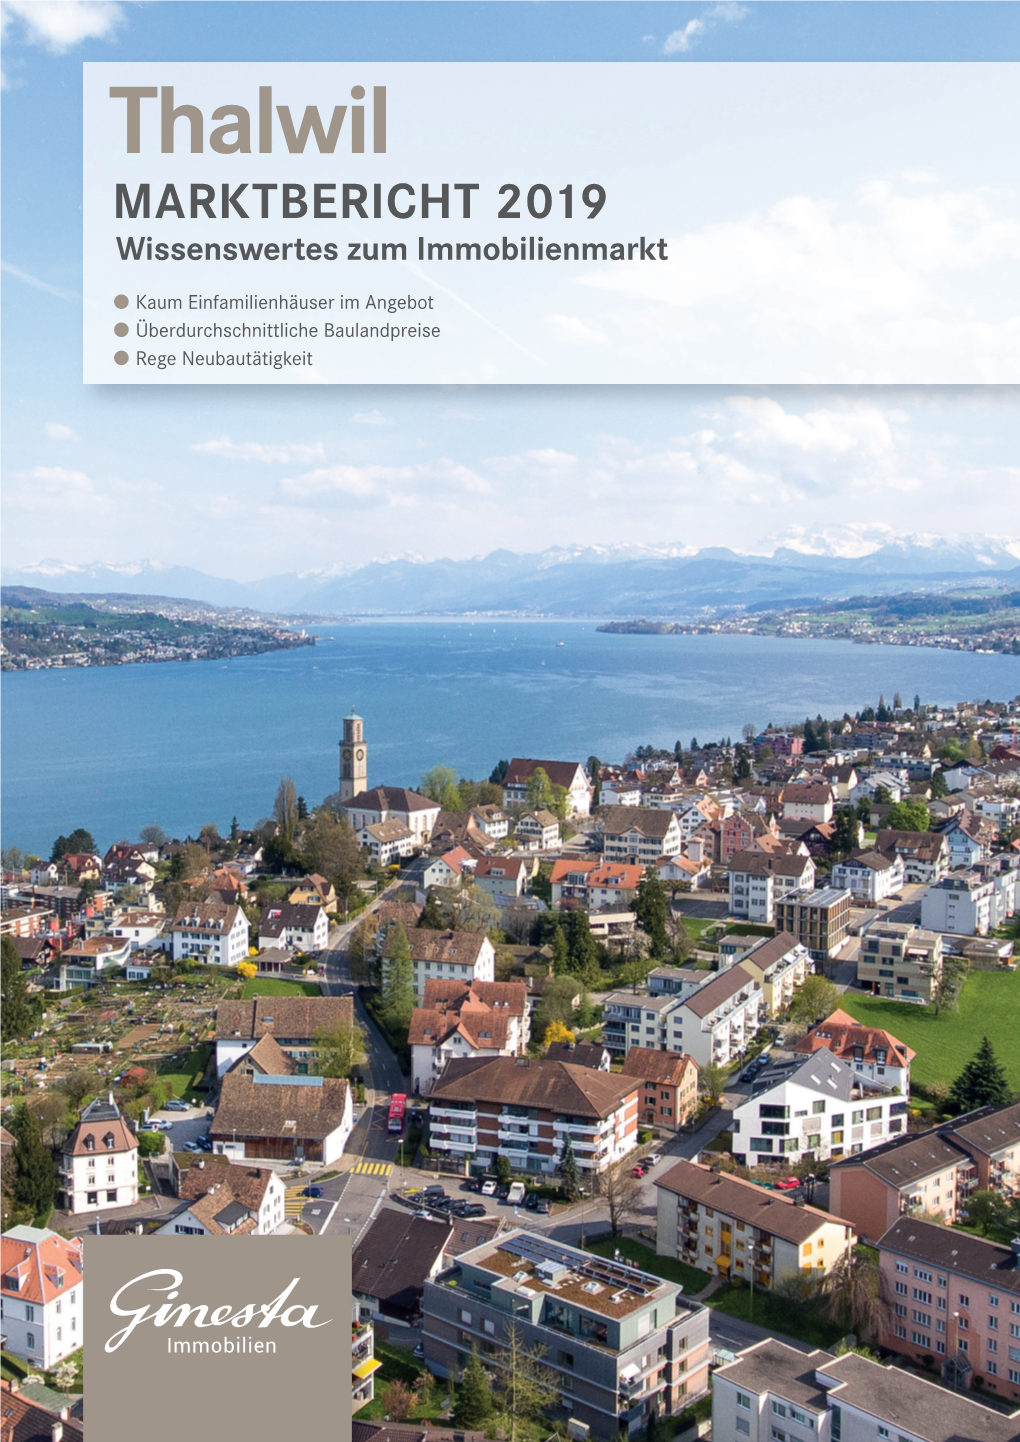 Marktbericht Gemeinde Thalwil 2019